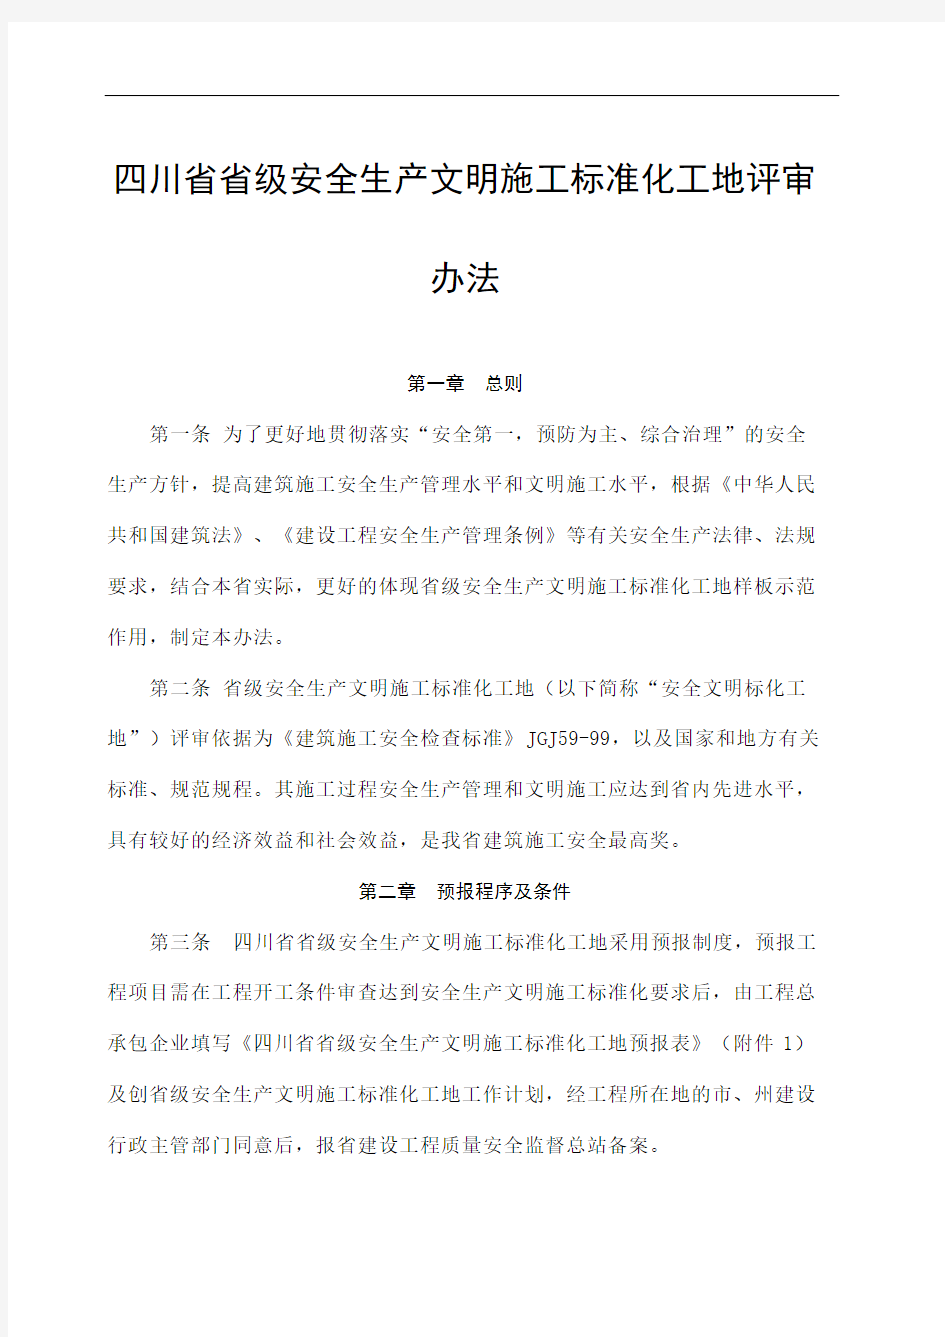 川省省级安全生产文明施工标准化工地评审办法